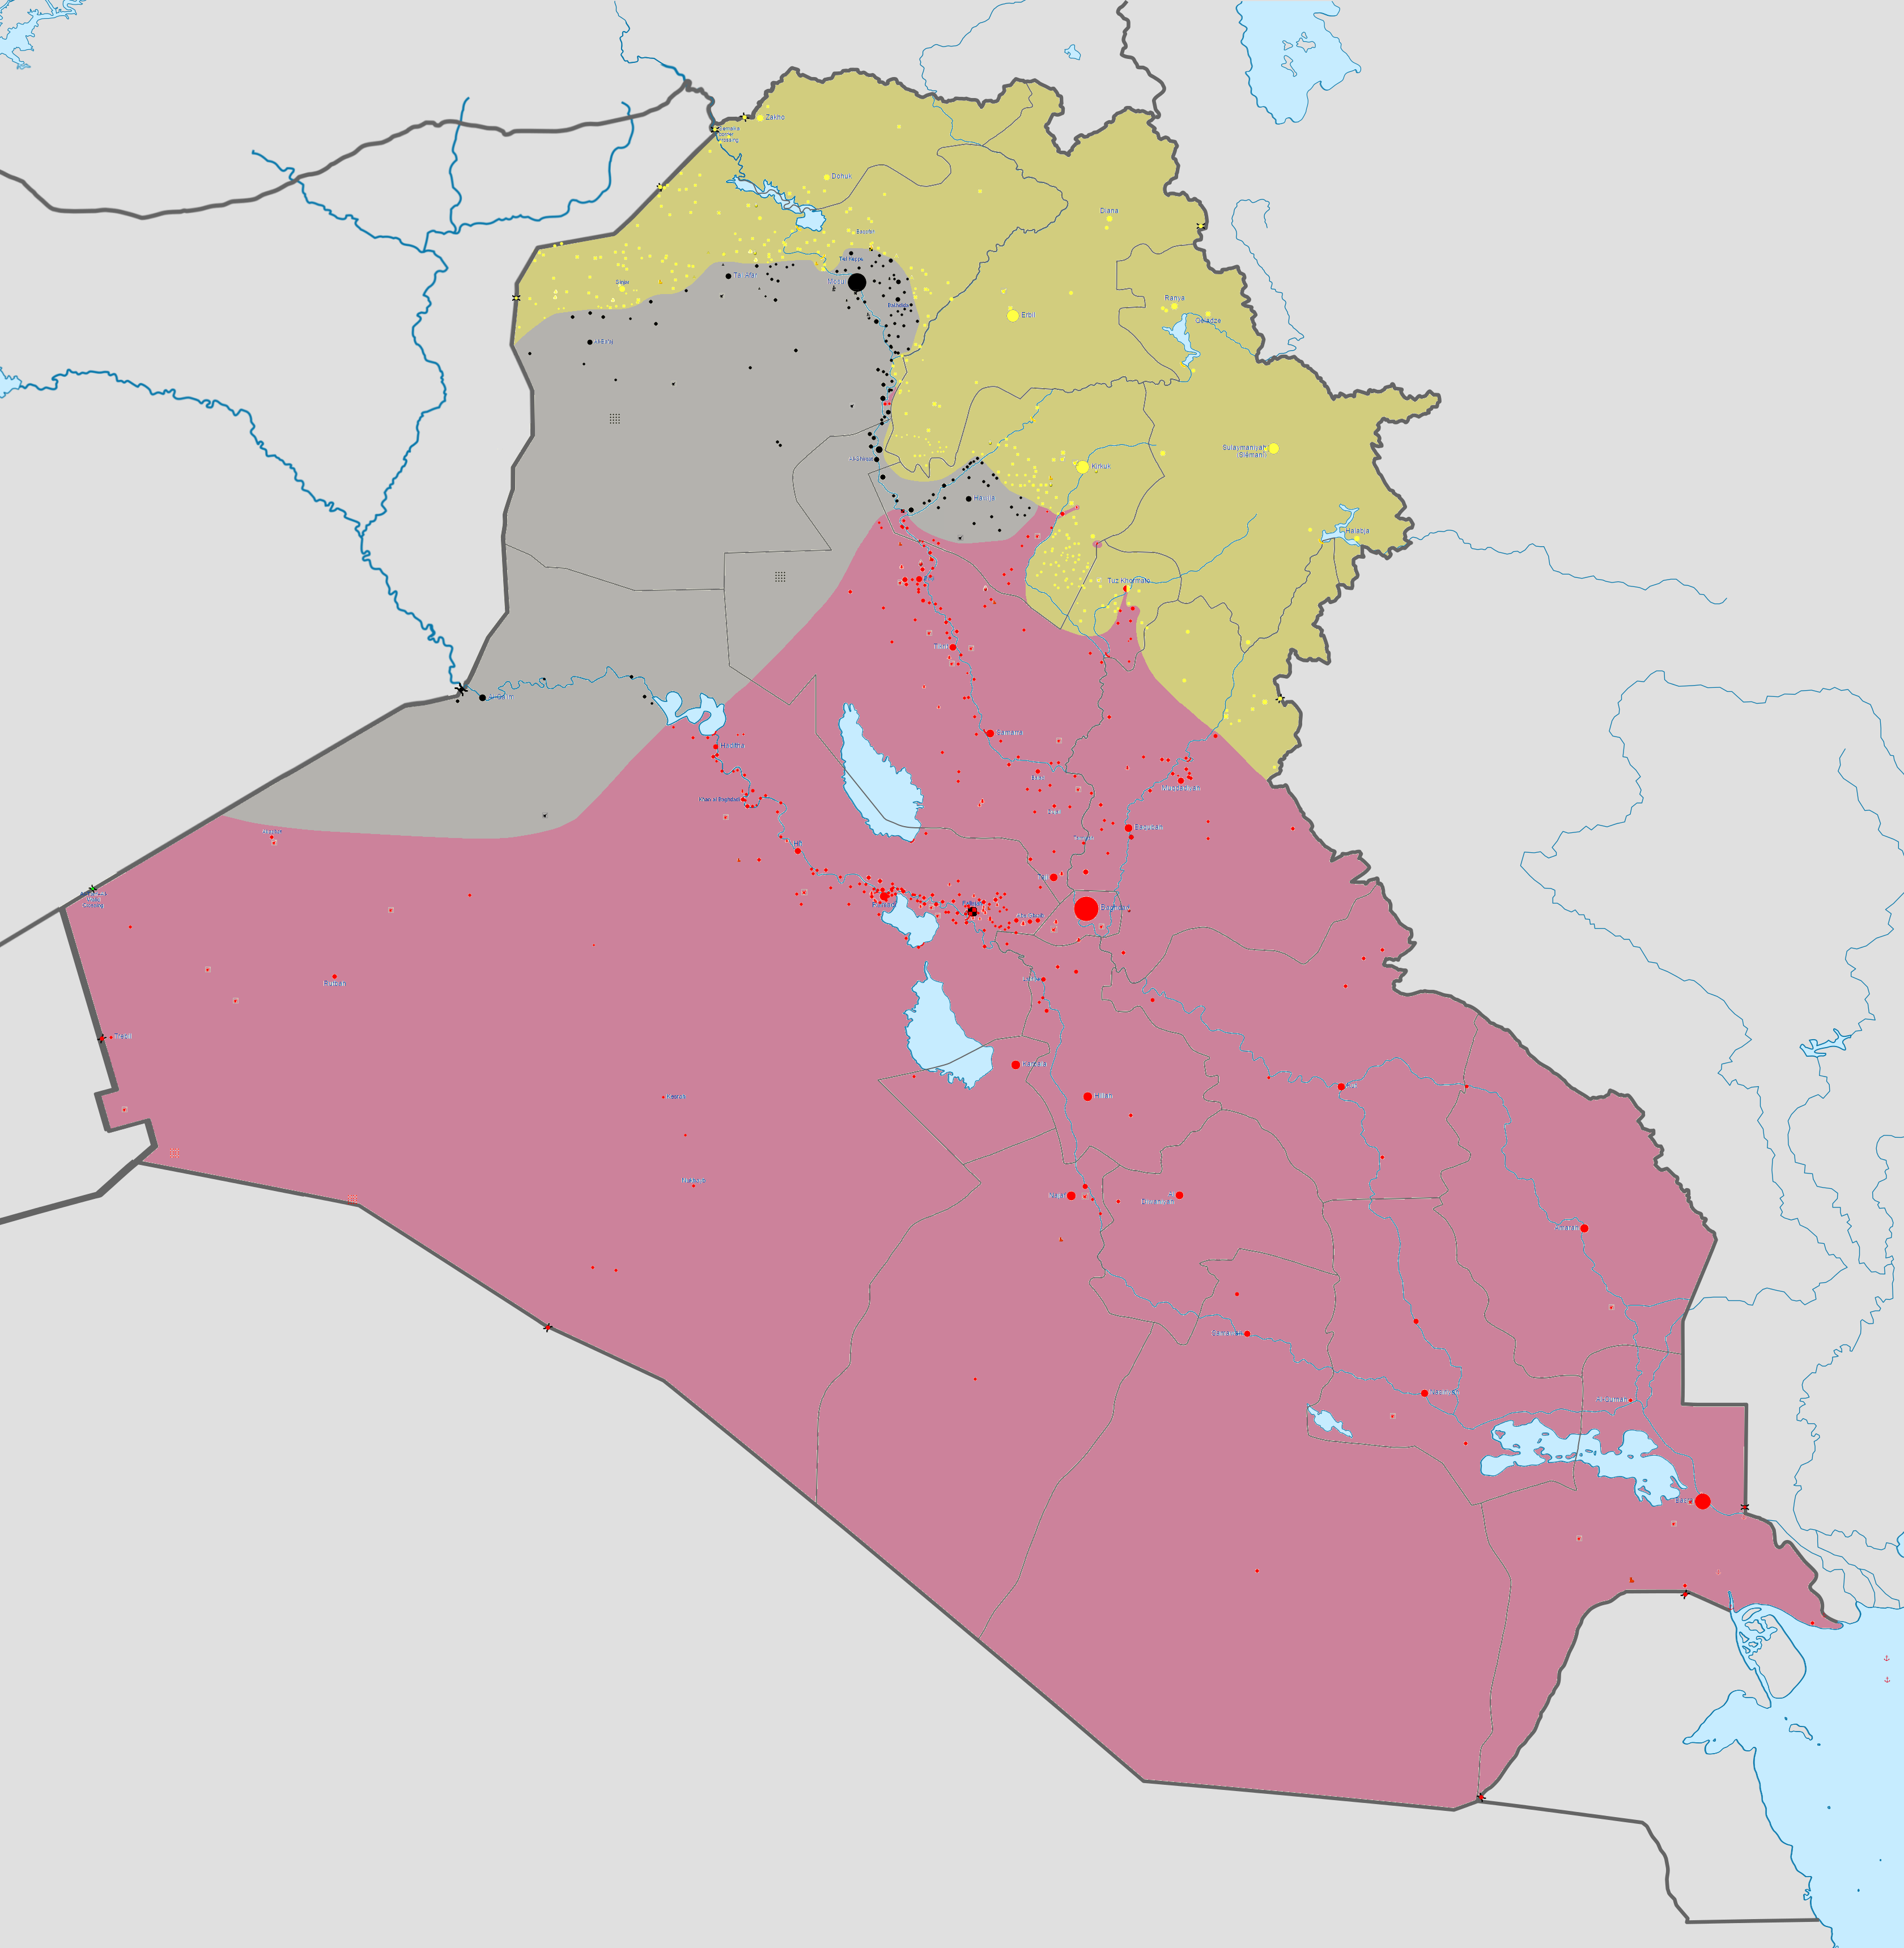 2014年伊拉克北部內戰